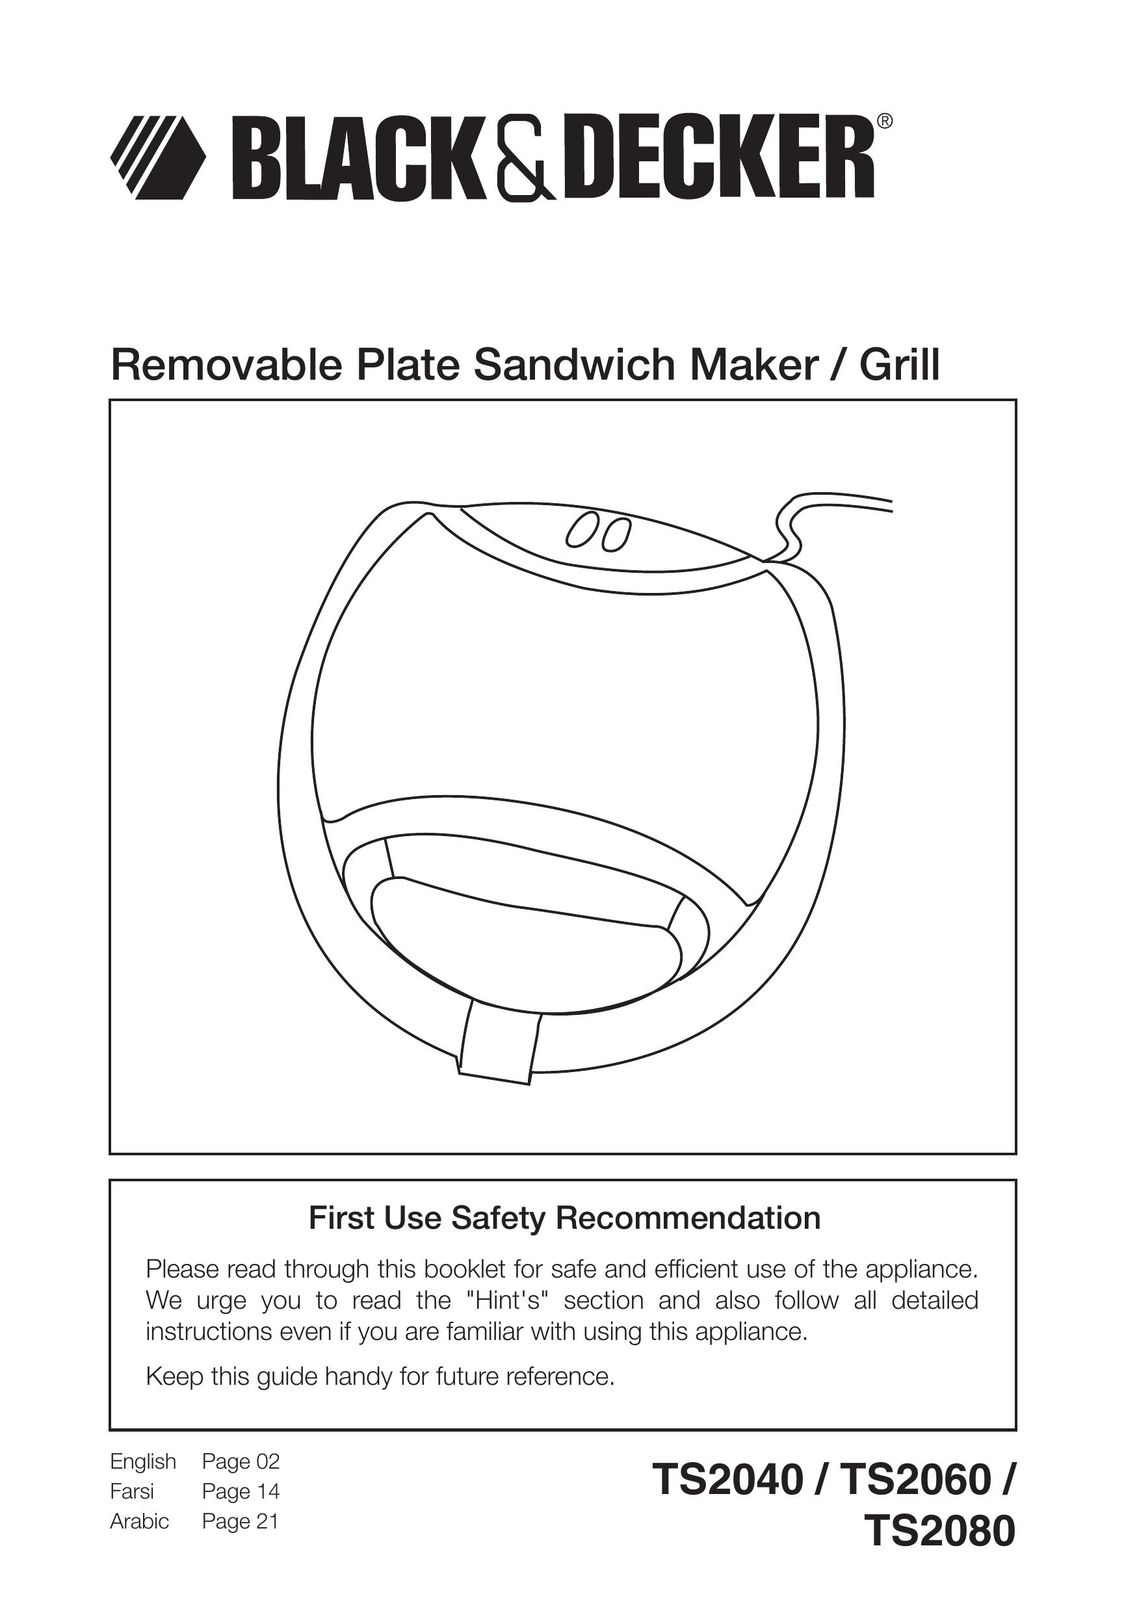 Black & Decker TS2080 Kitchen Grill User Manual